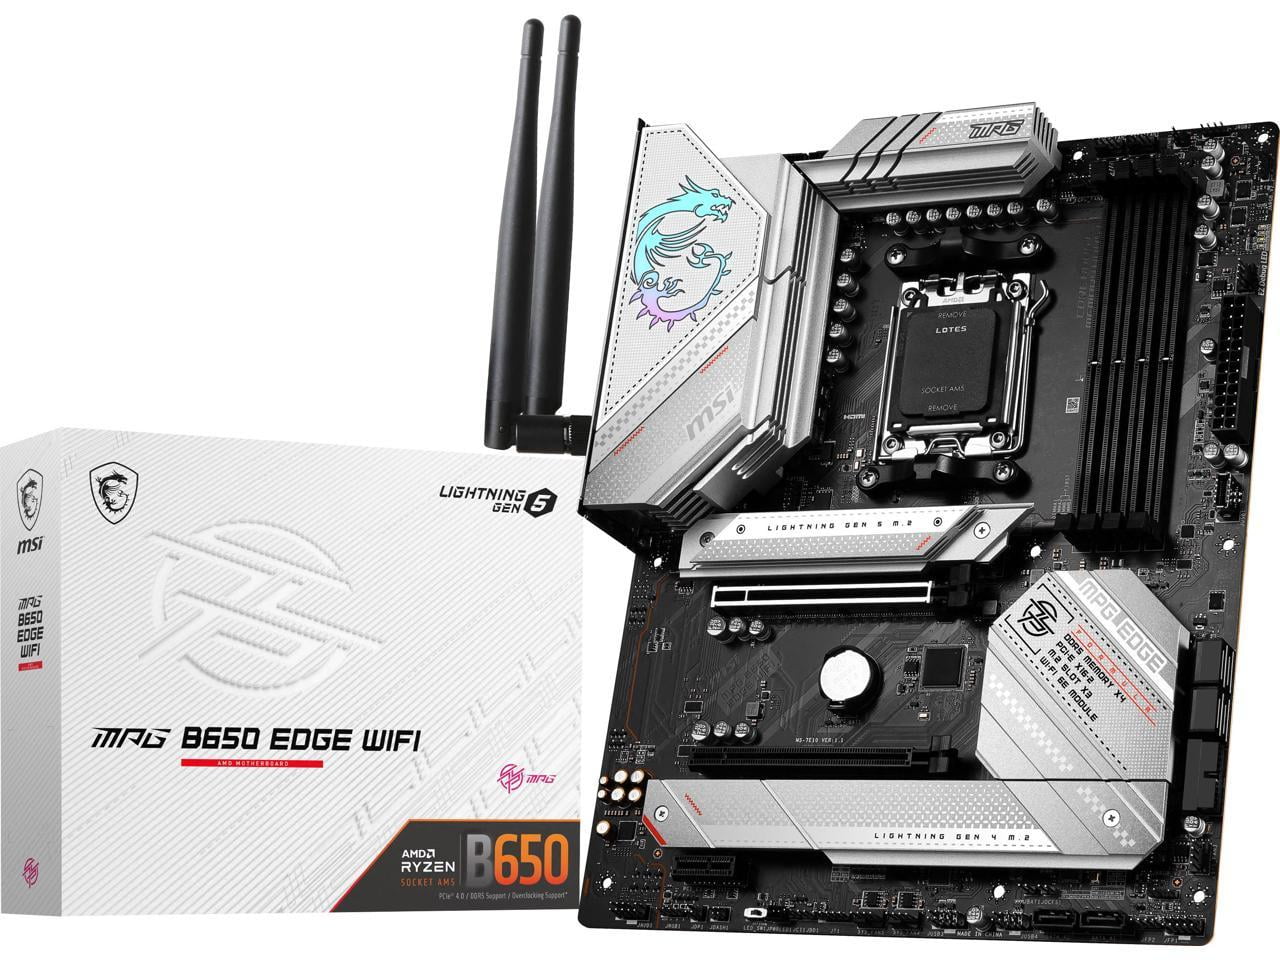 ASUS ROG STRIX B550-A GAMING AM4 AMD B550 SATA 6Gb/s ATX AMD